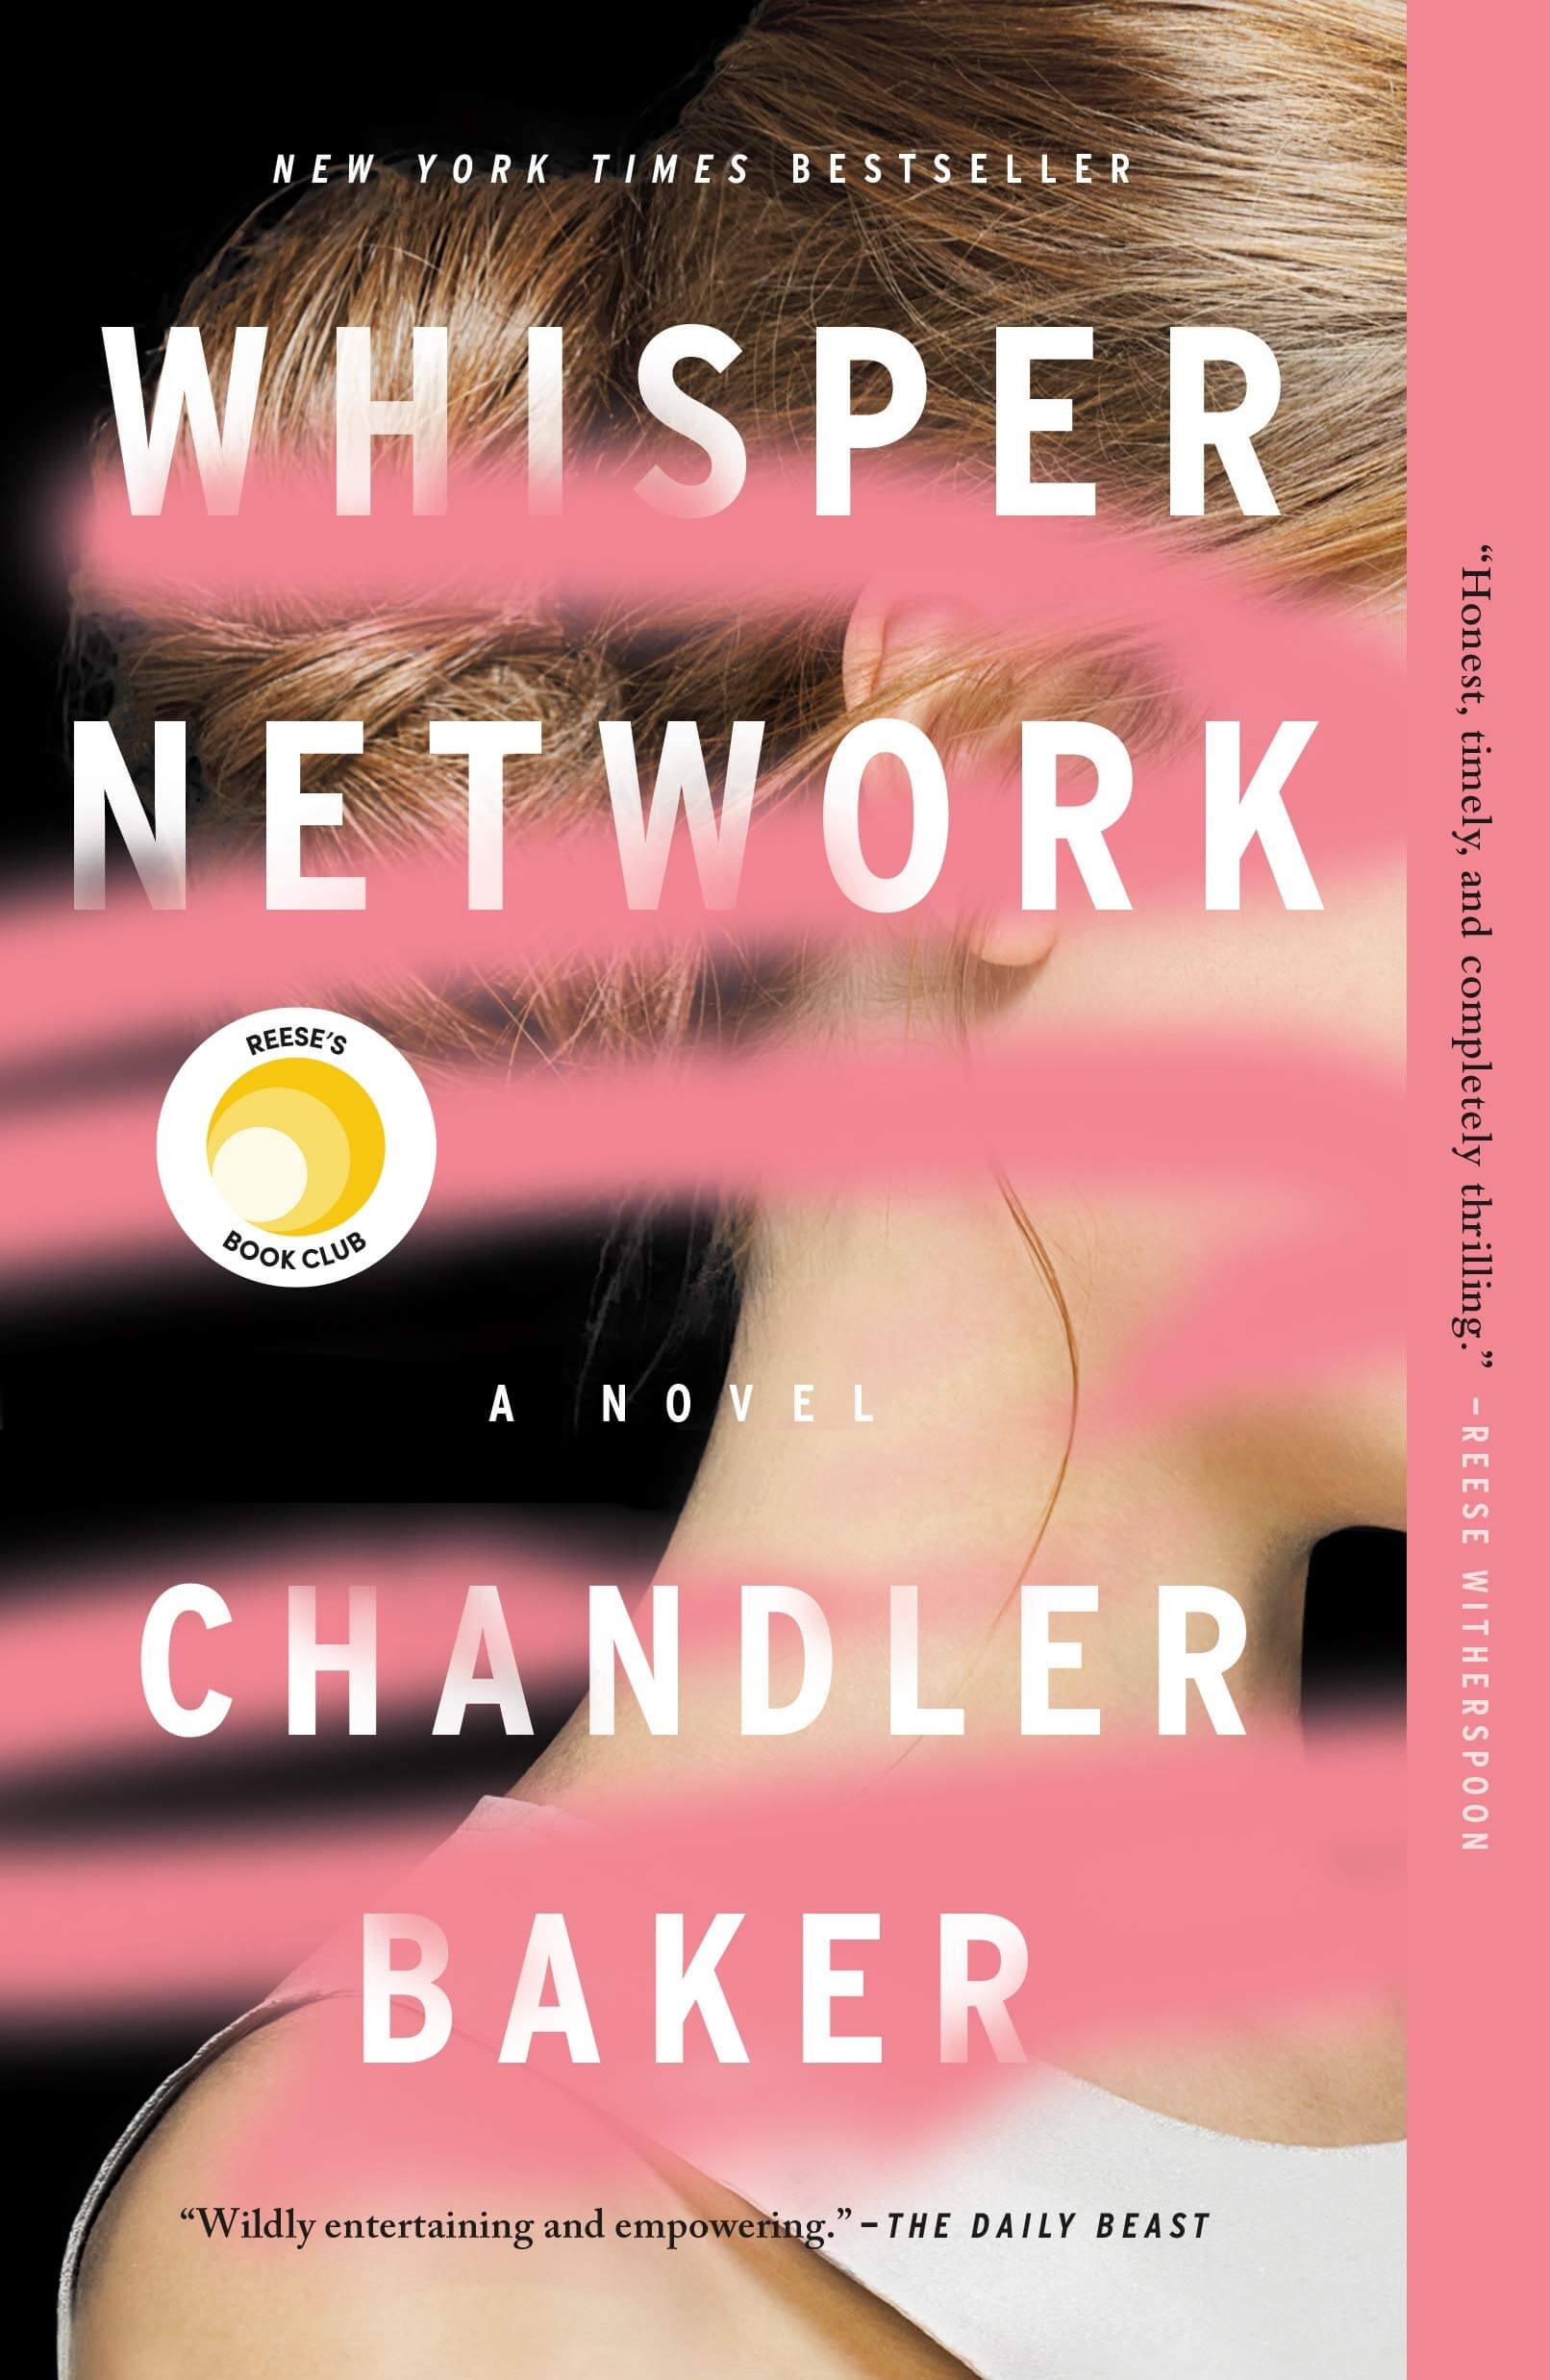 The Whisper Network